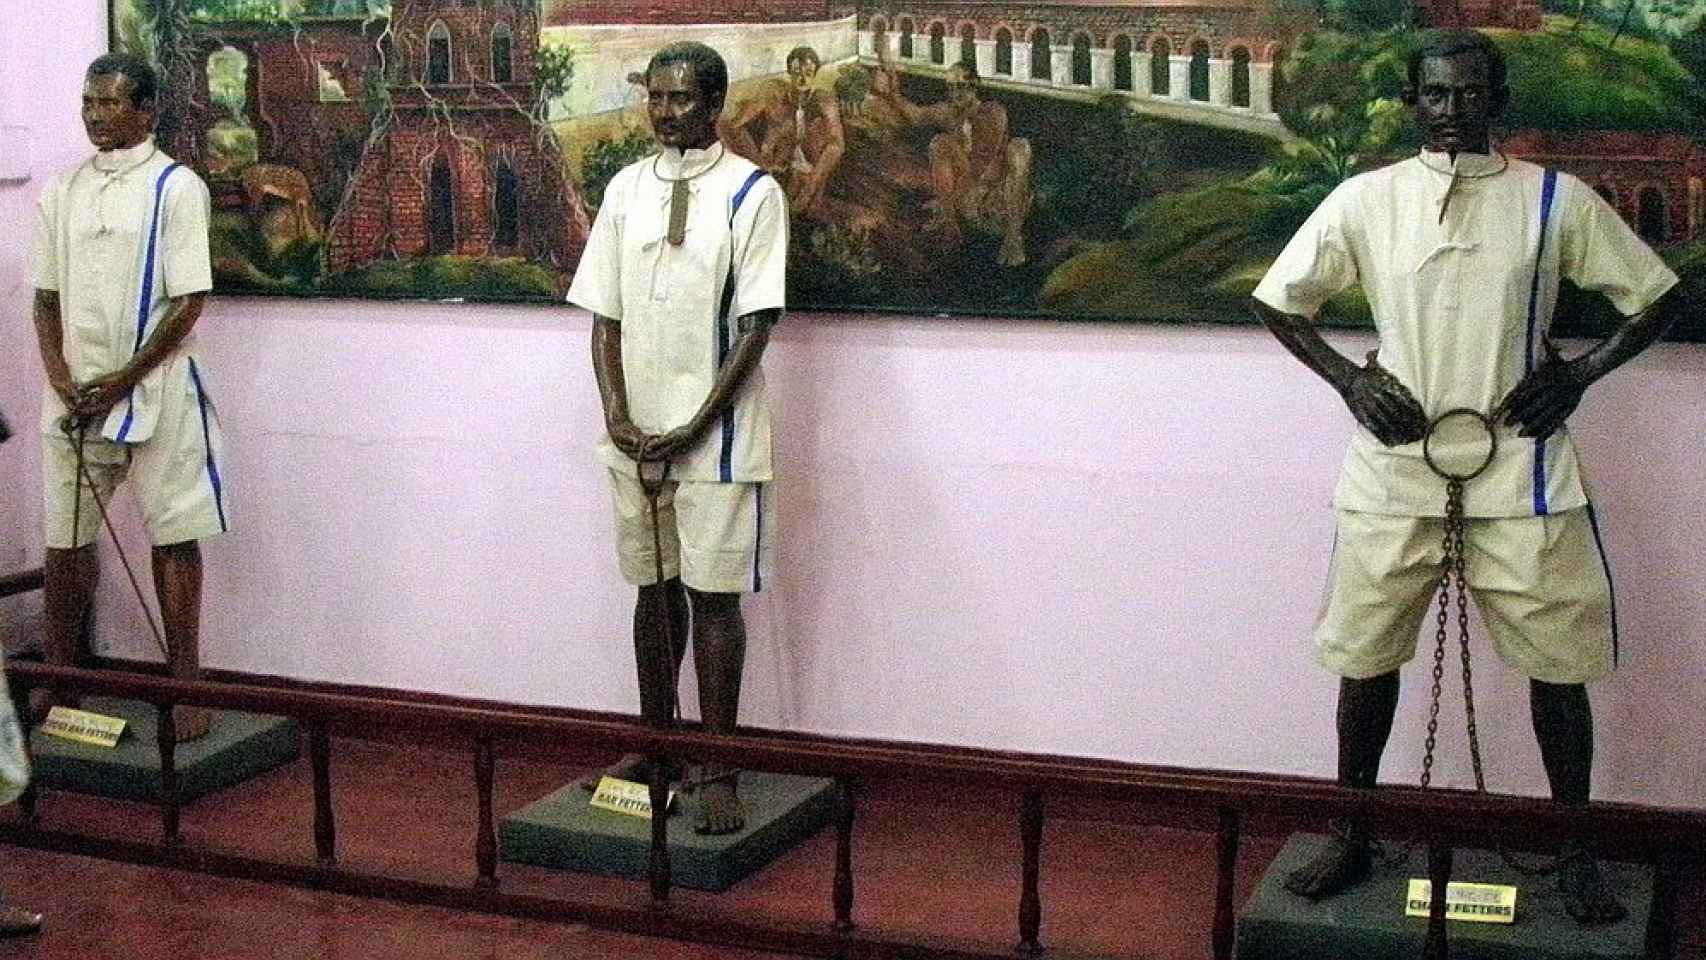 Figuras de prisioneros en un museo indio